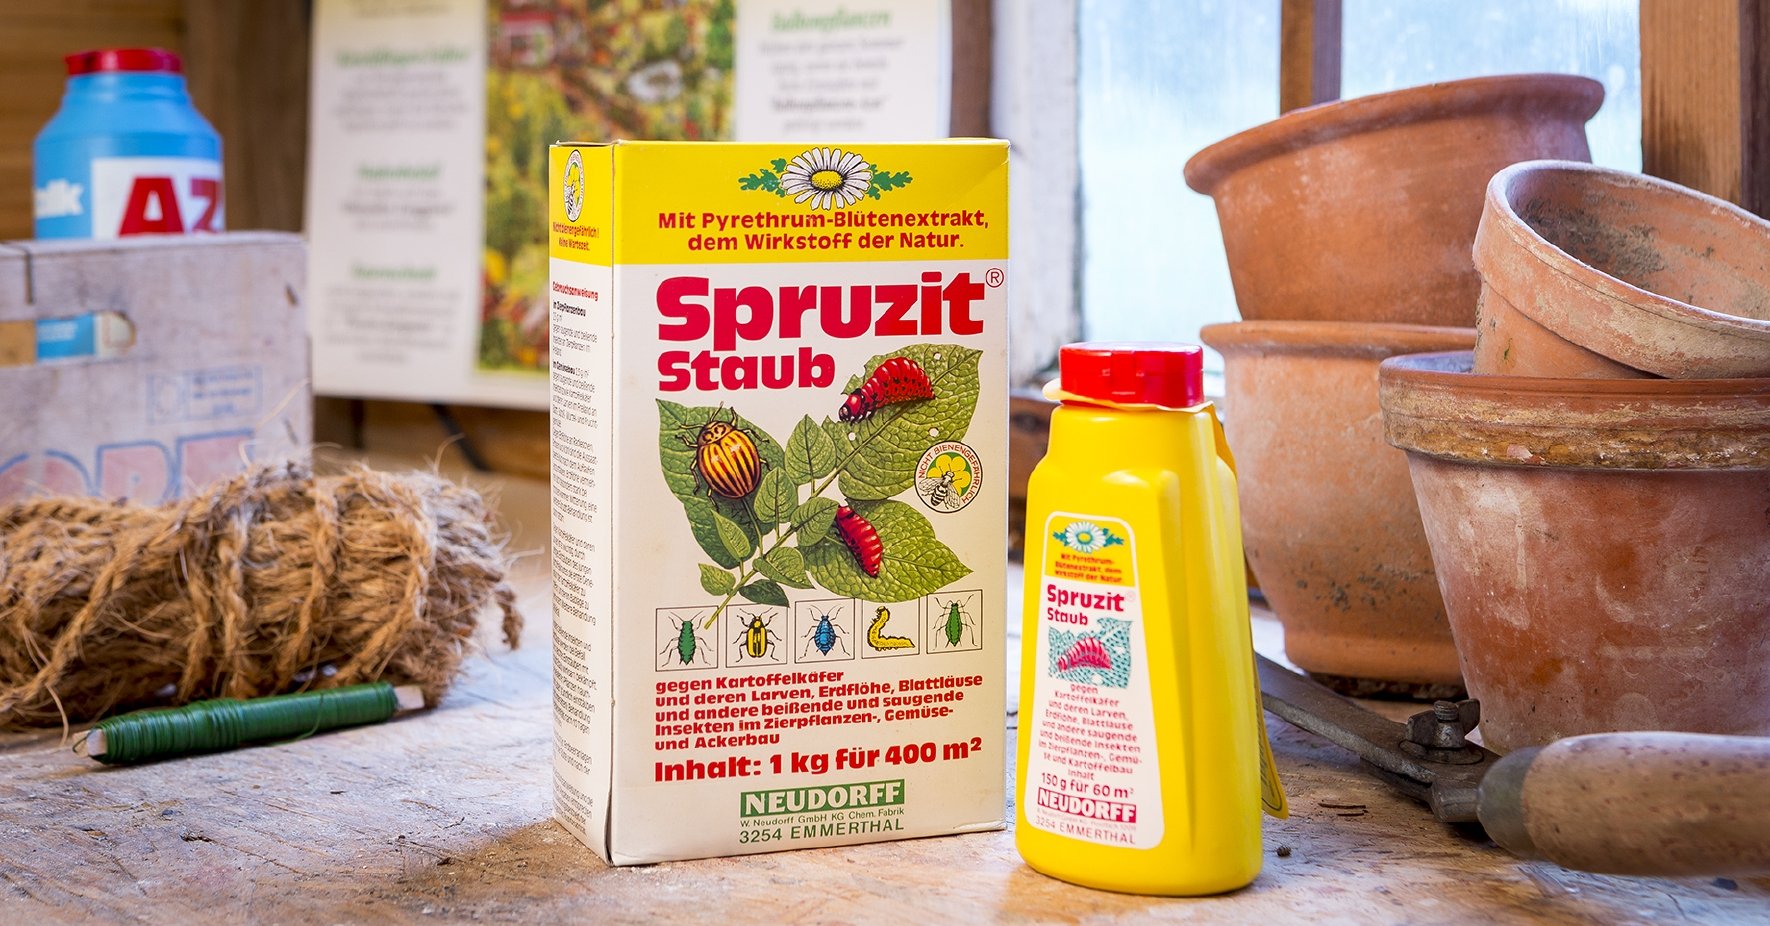 Produkten Spruzit Staub i sin tidigare förpackning